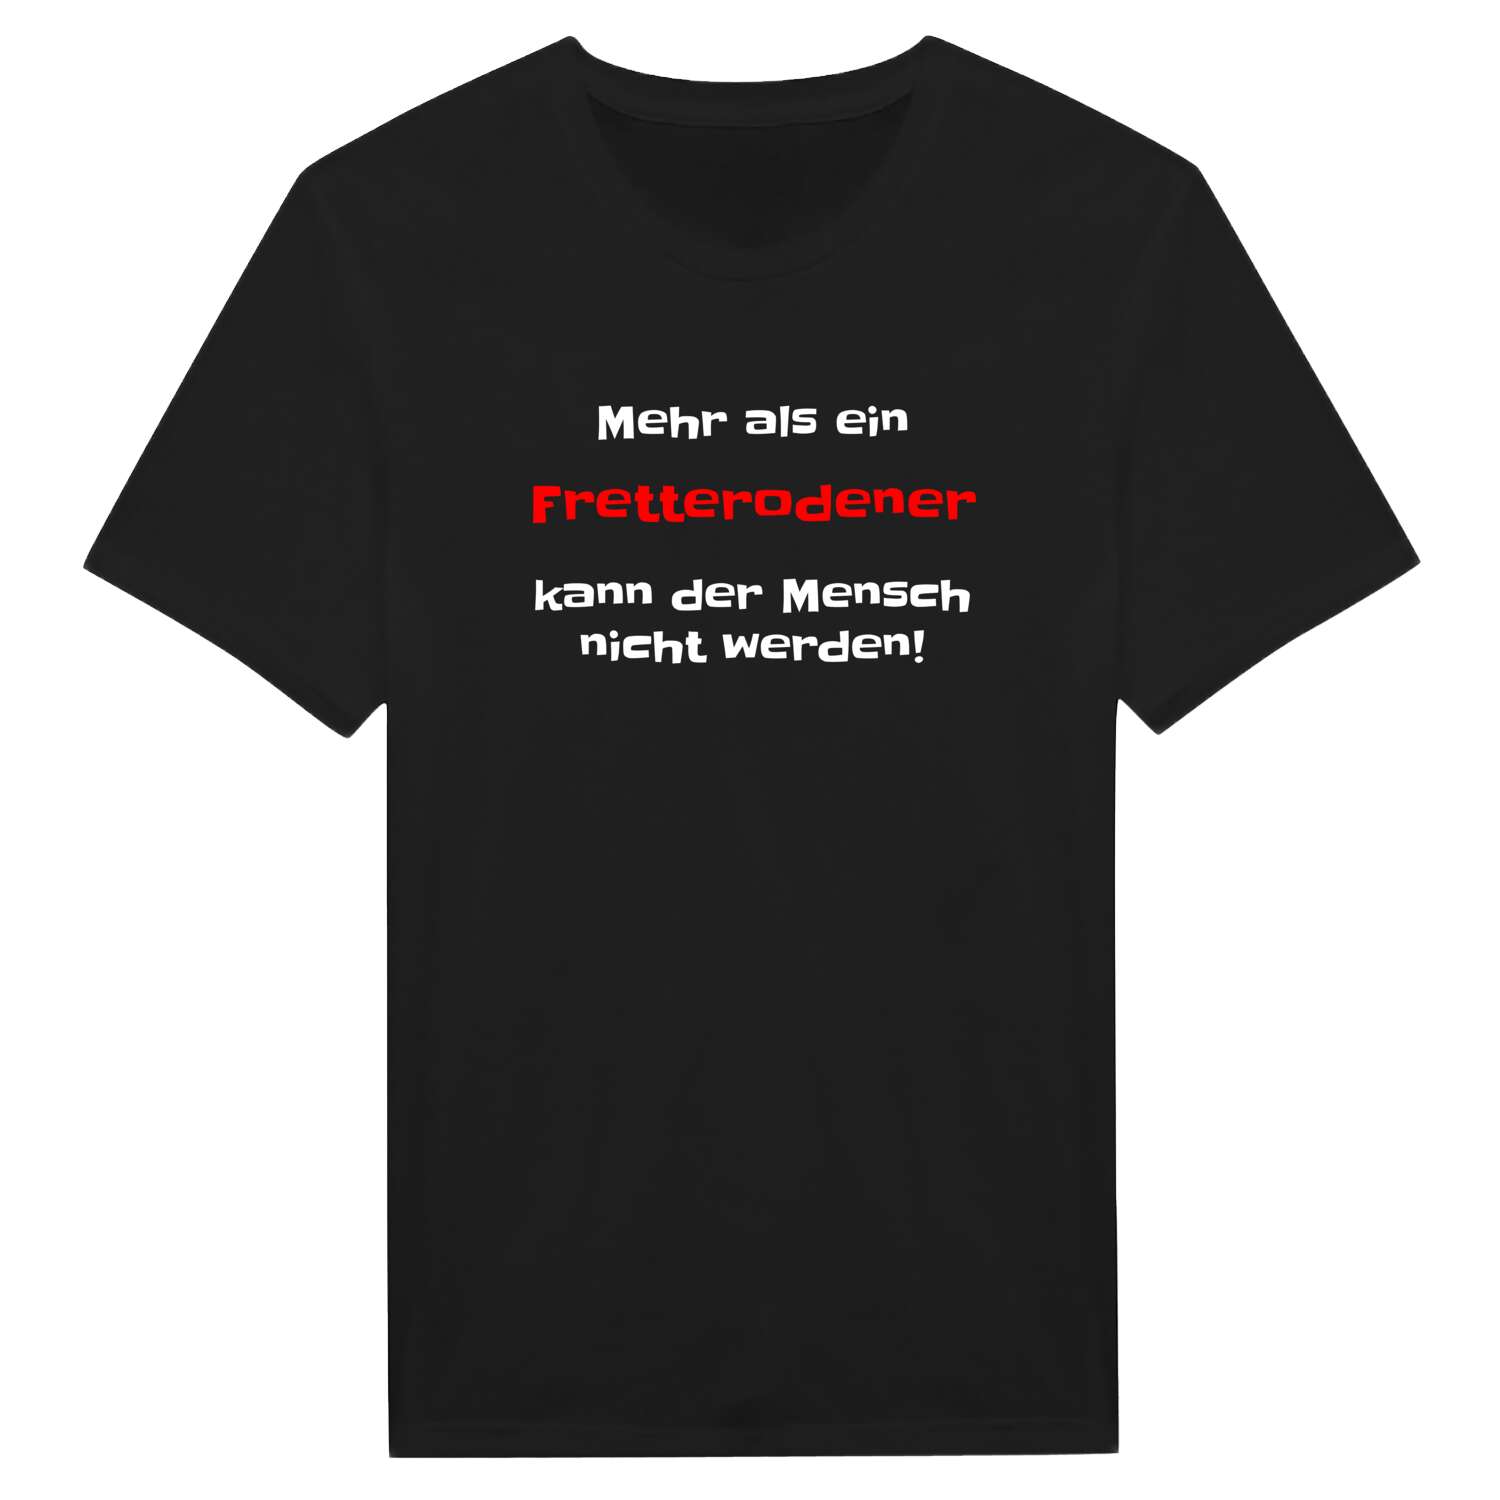 Fretterode T-Shirt »Mehr als ein«